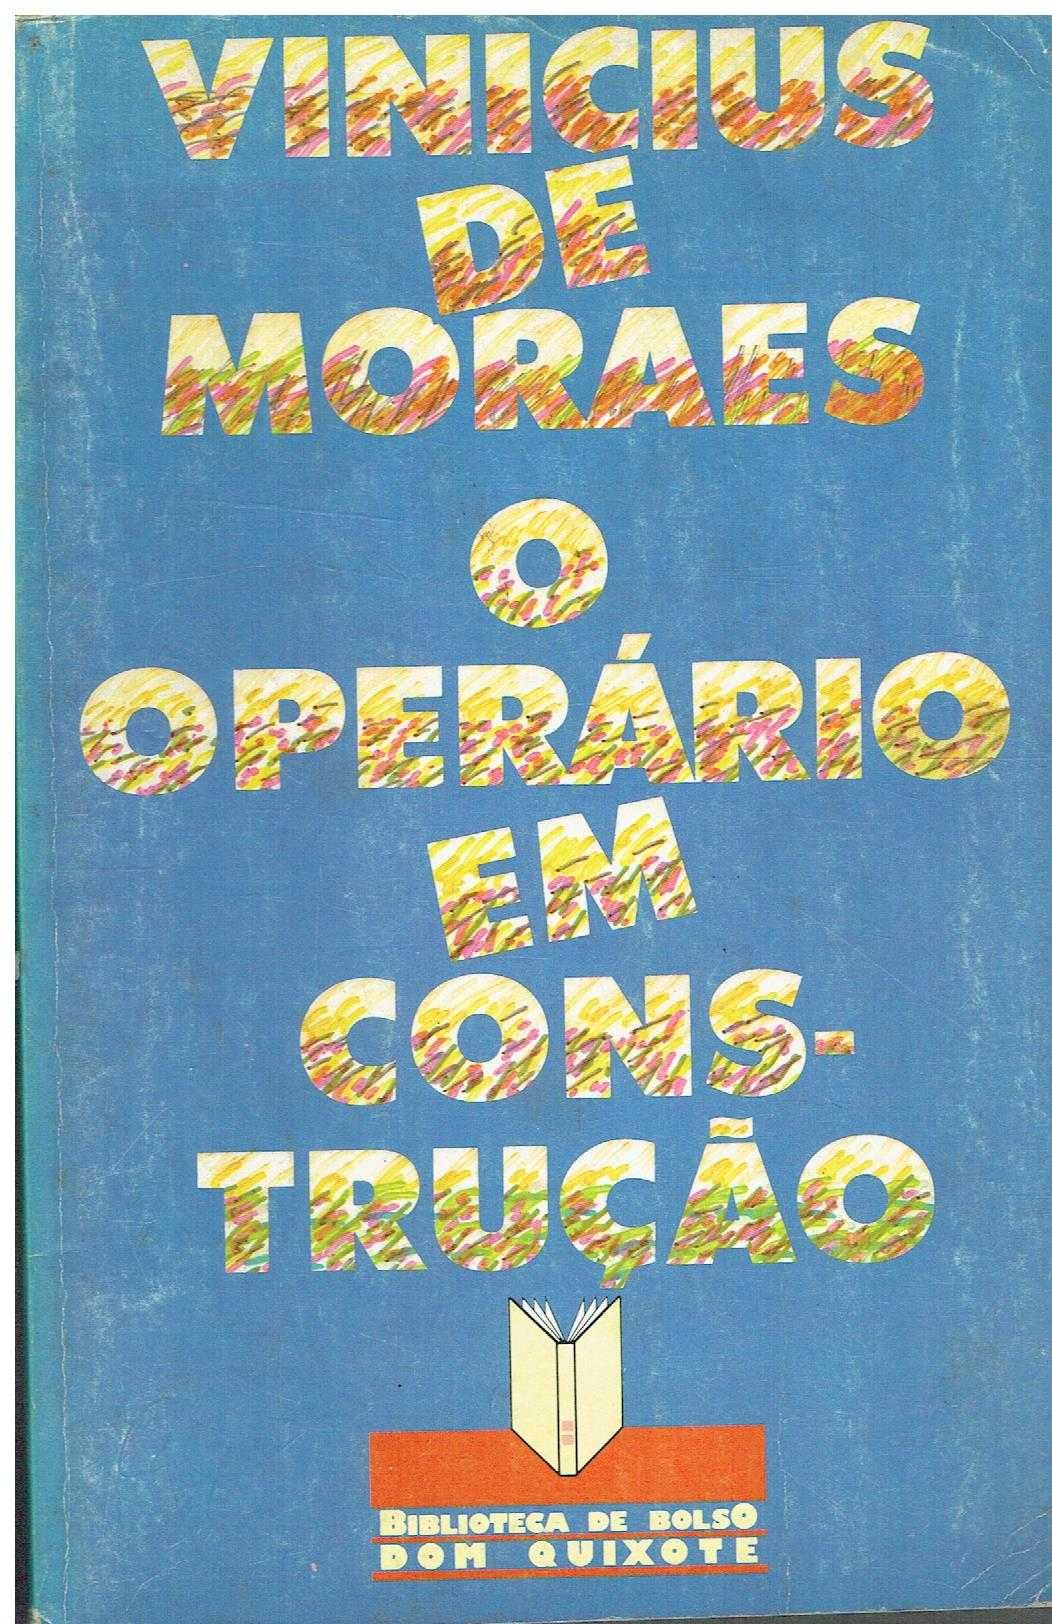 833

O Operário em Construção
de Vinicius de Moraes